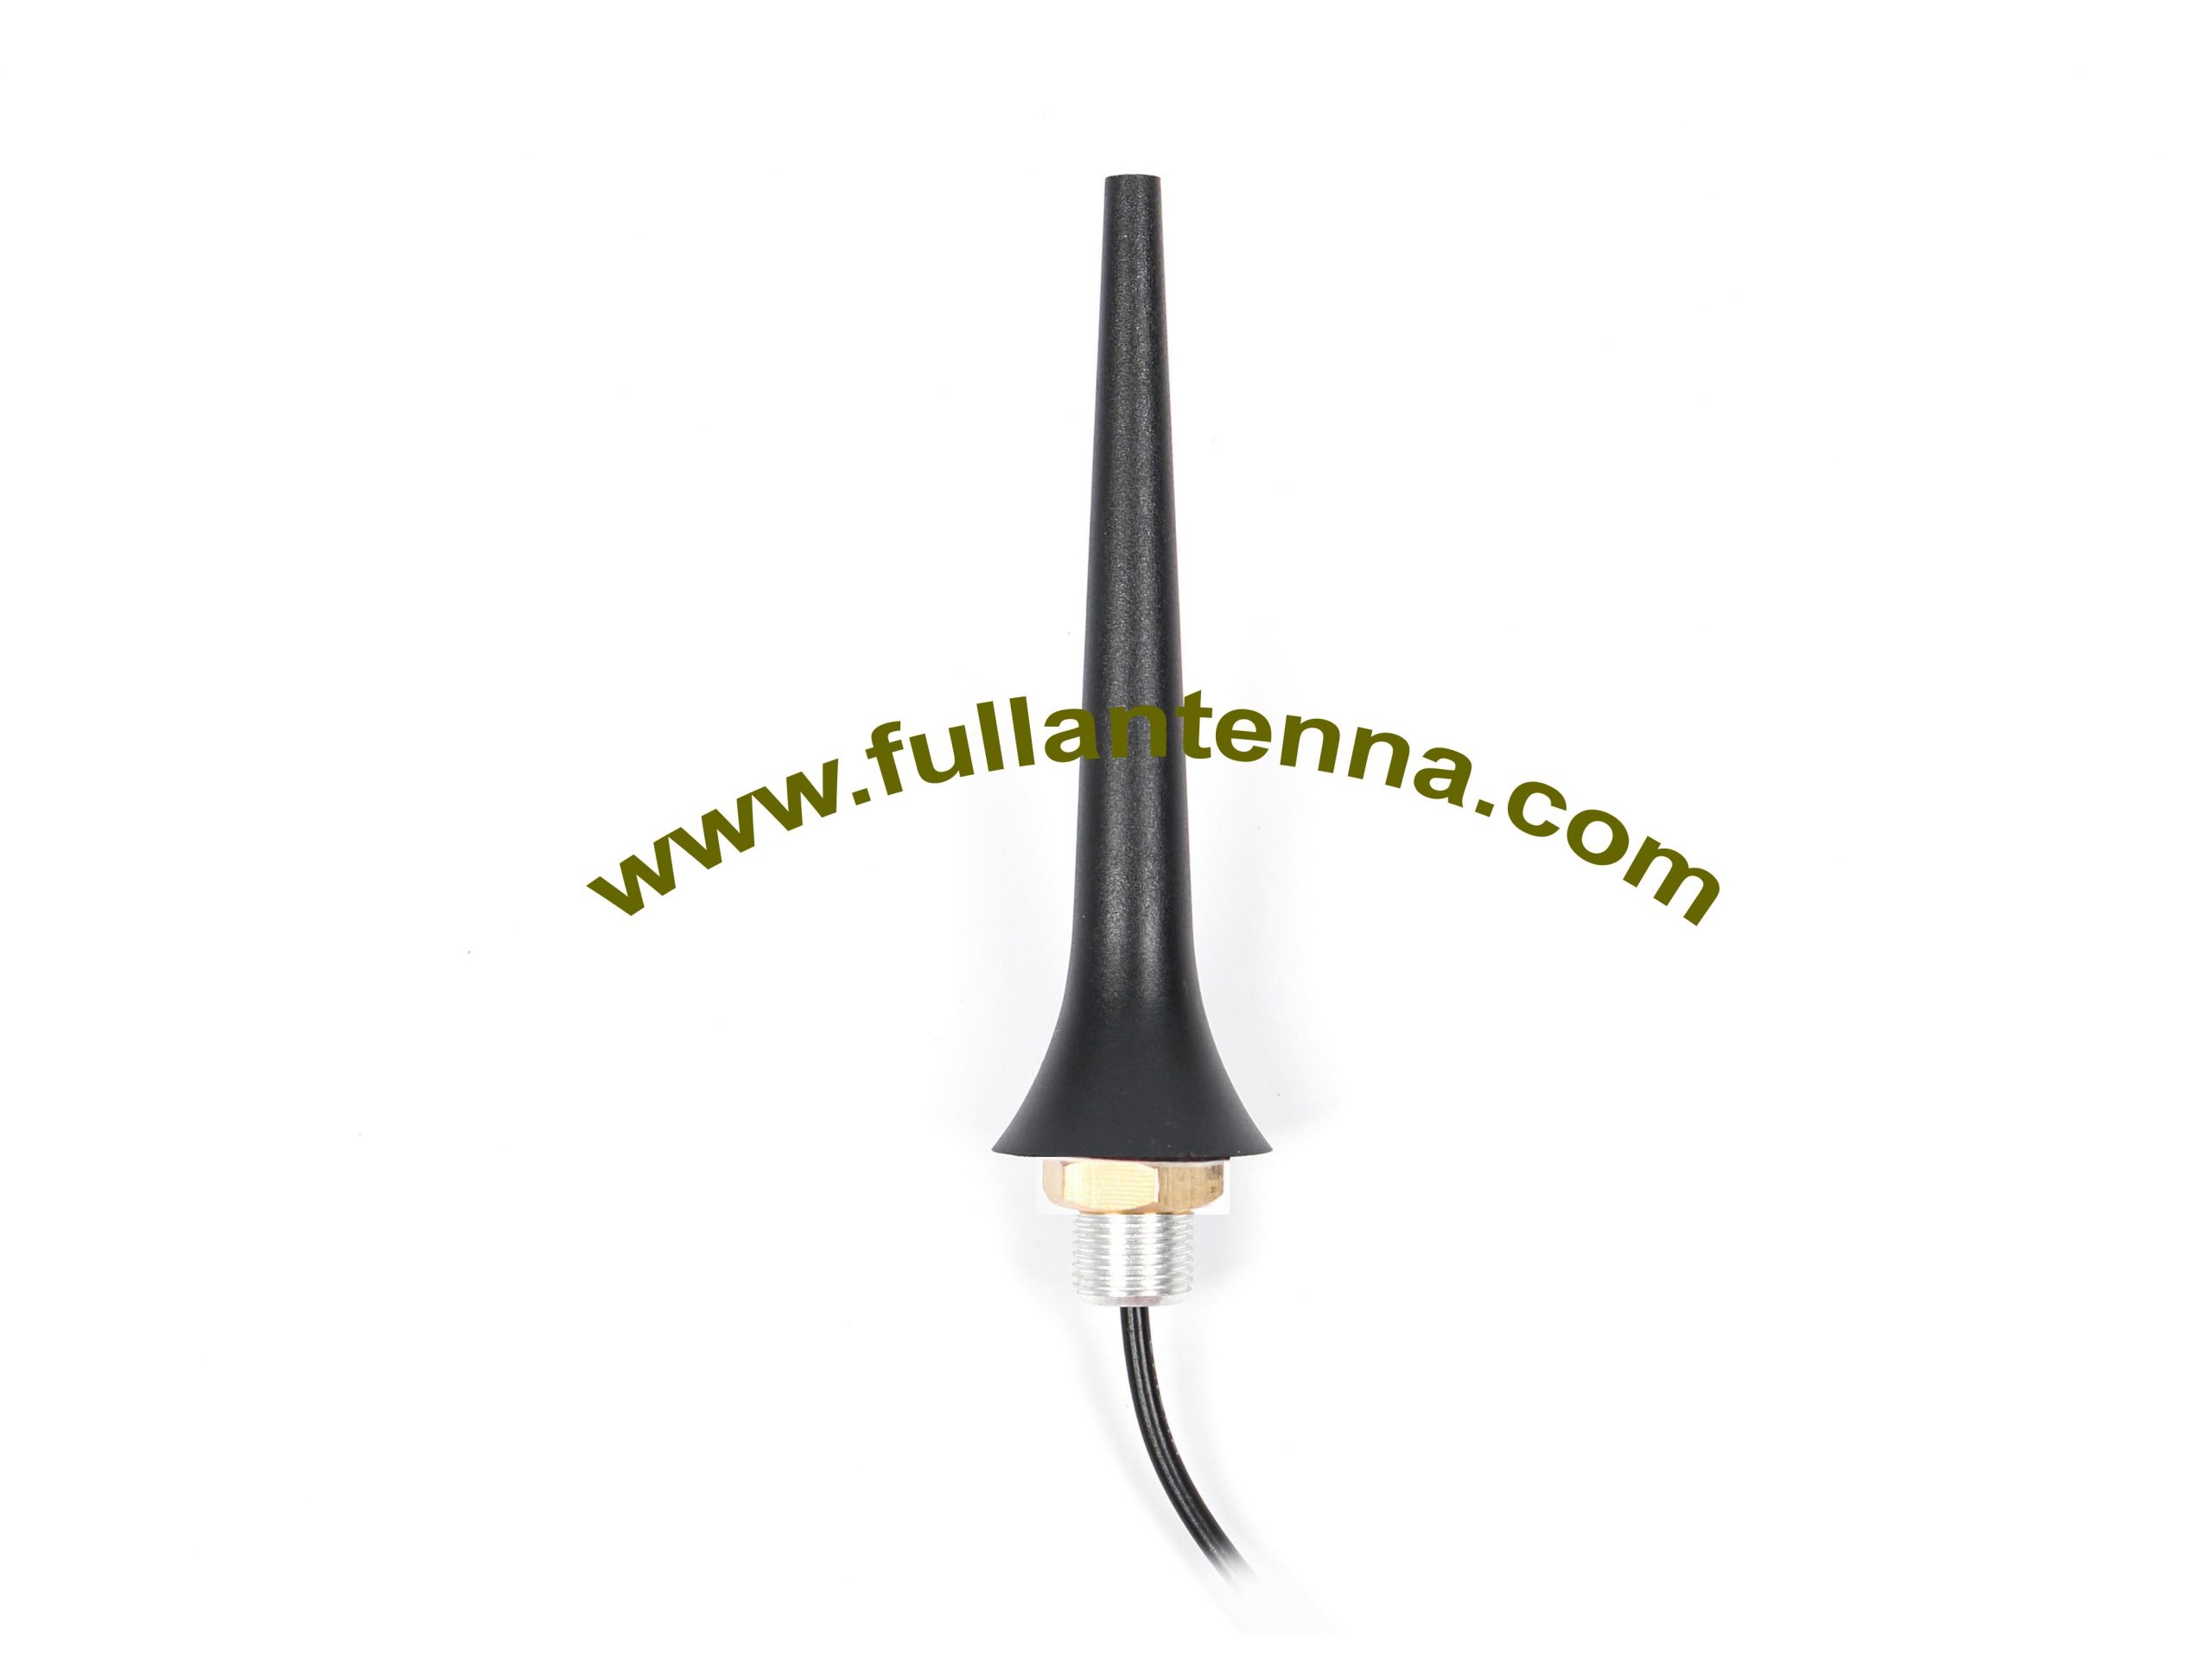 P / N: FAGSM.11, zewnętrzna antena GSM, antena zewnętrzna z kablem do montażu śrubowego o długości 1-5 metrów